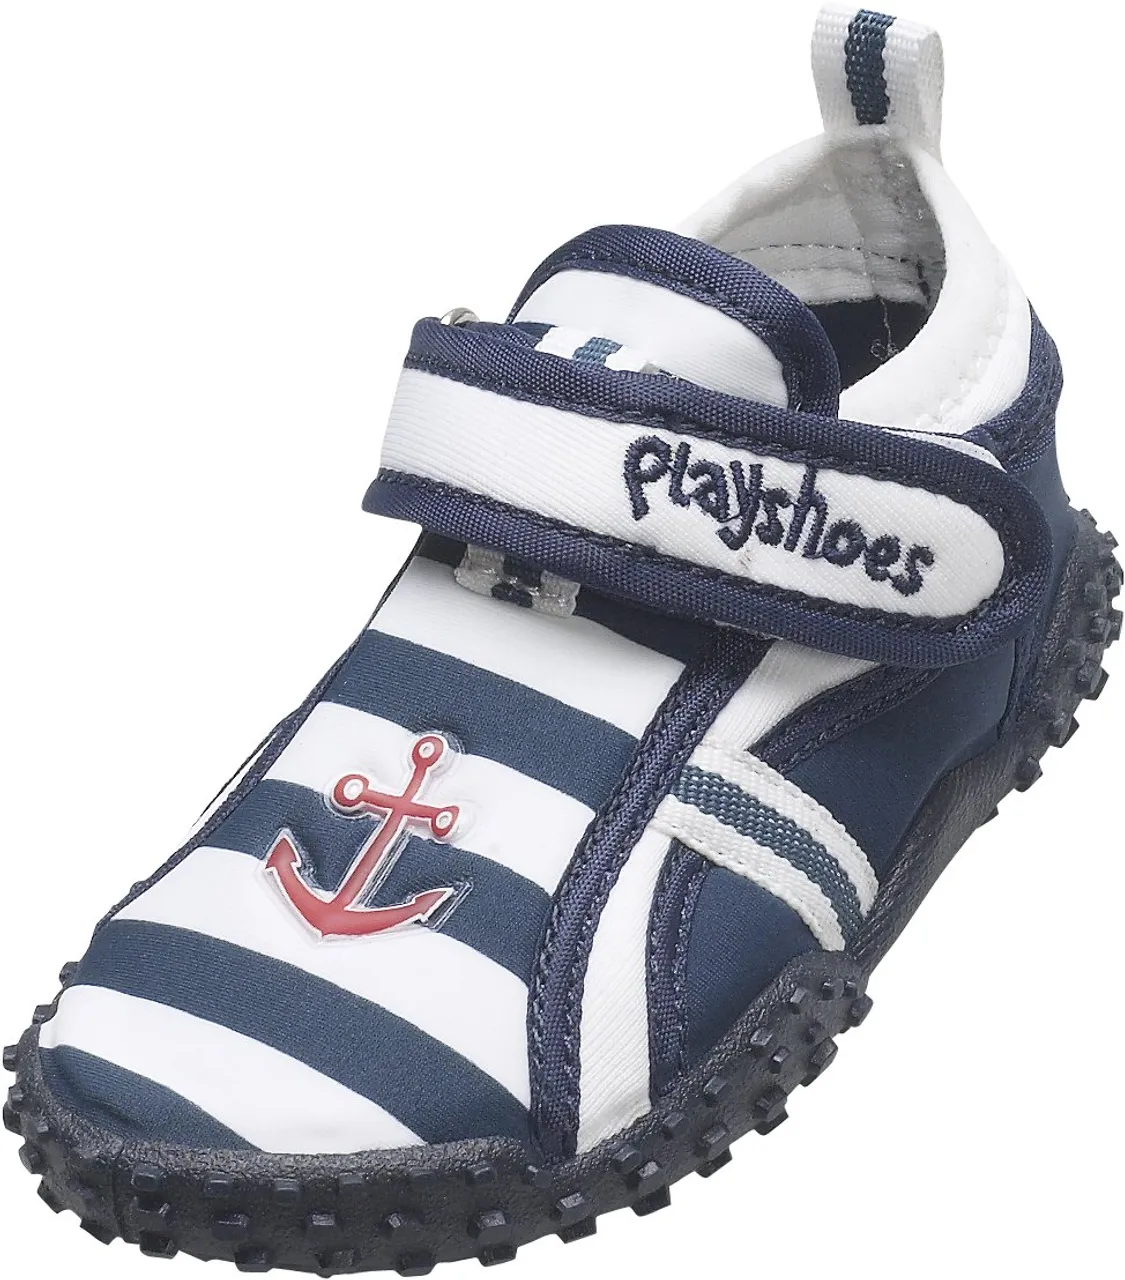 Playshoes Unisex Kinder Aquaschuhe Aqua-Schuhe Maritim